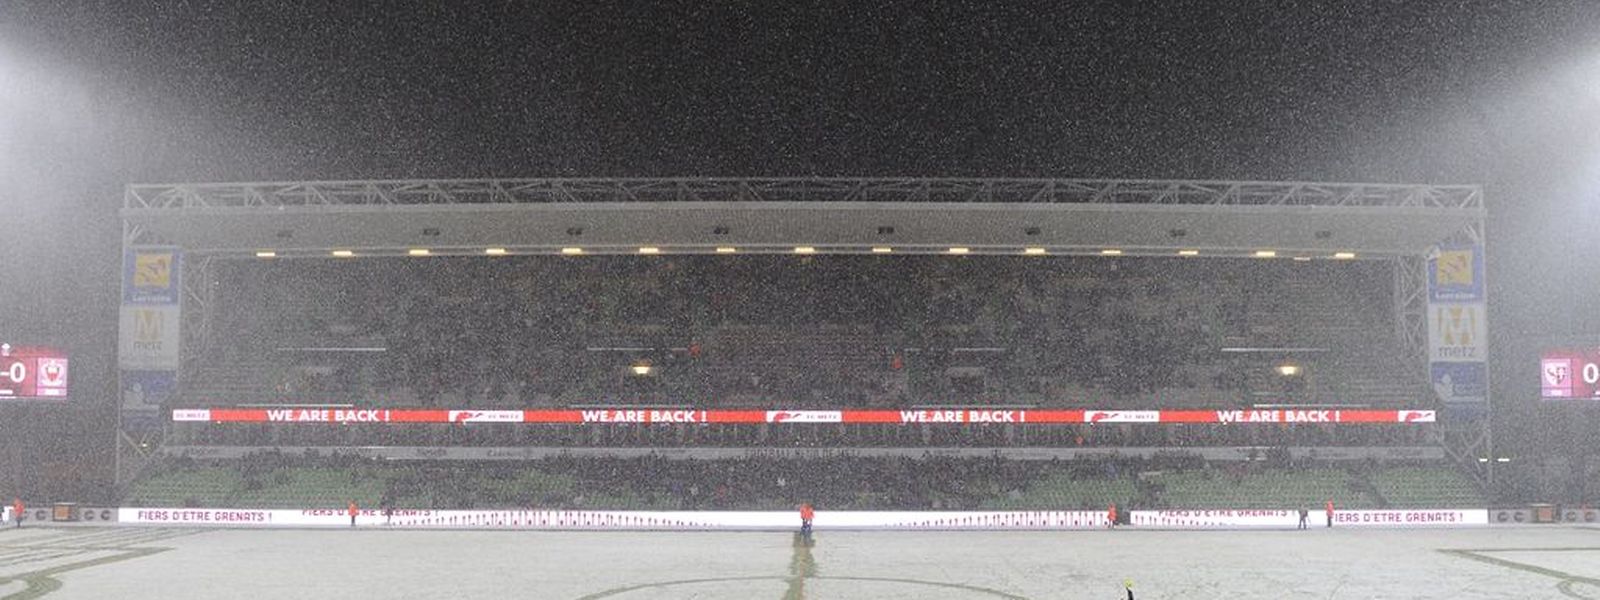 Des fortes chutes de neige au Stade Saint-Symphorien.